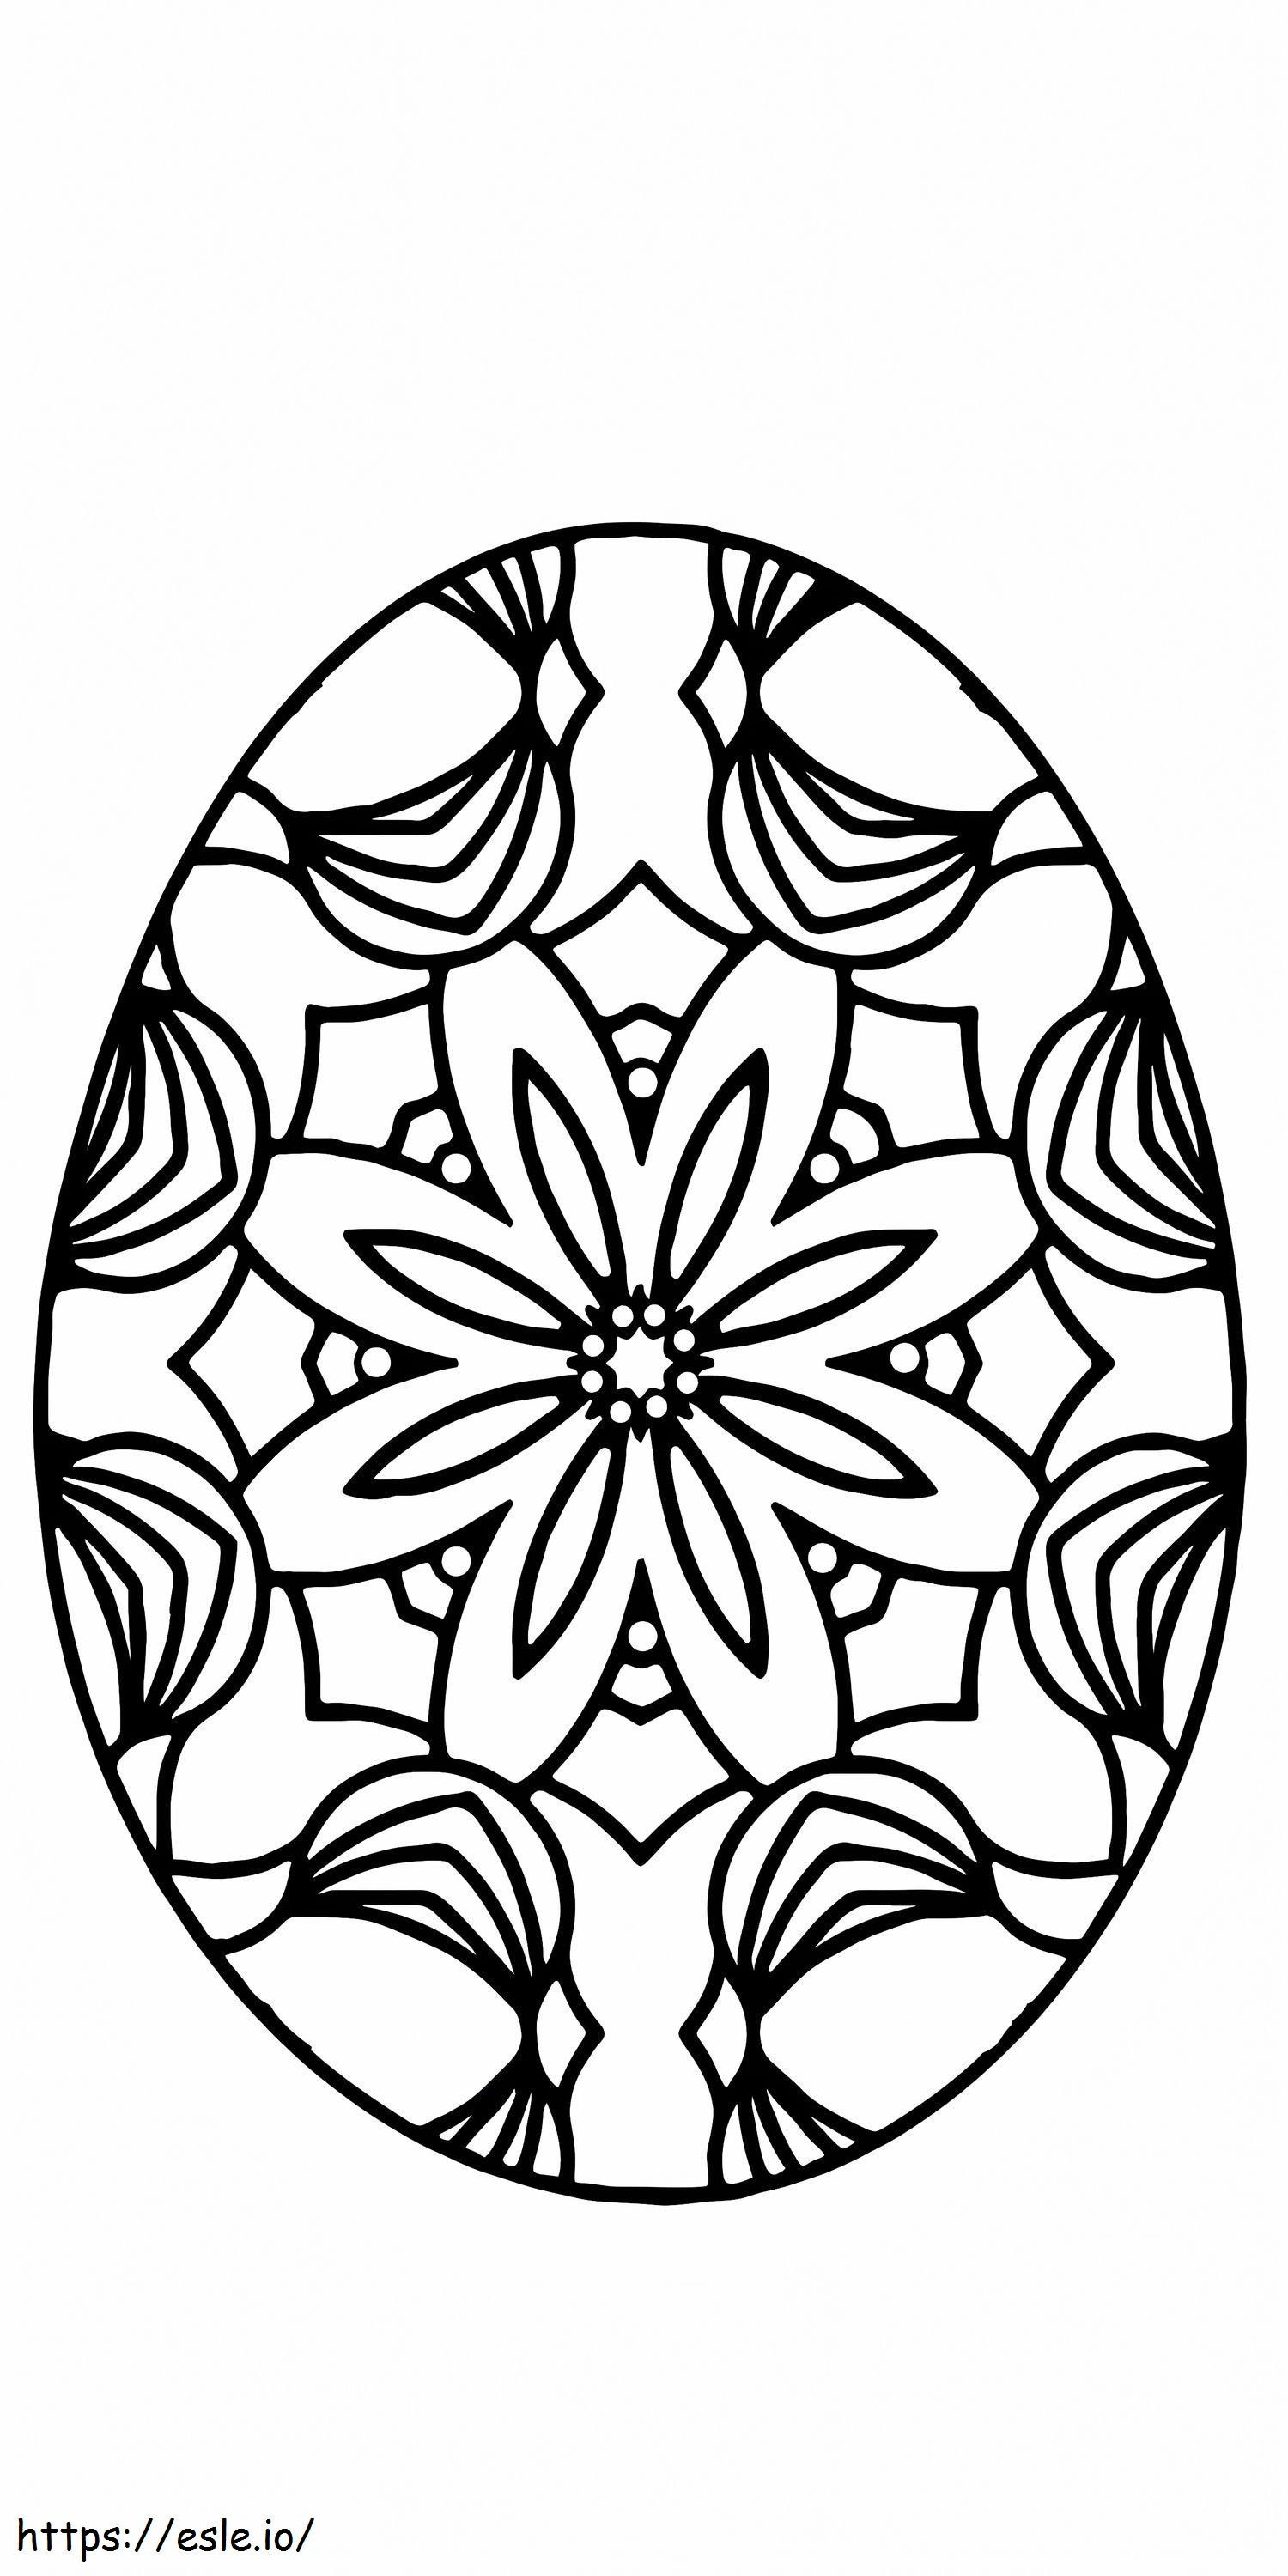 Osterei-Blumenmuster zum Ausdrucken 5 ausmalbilder